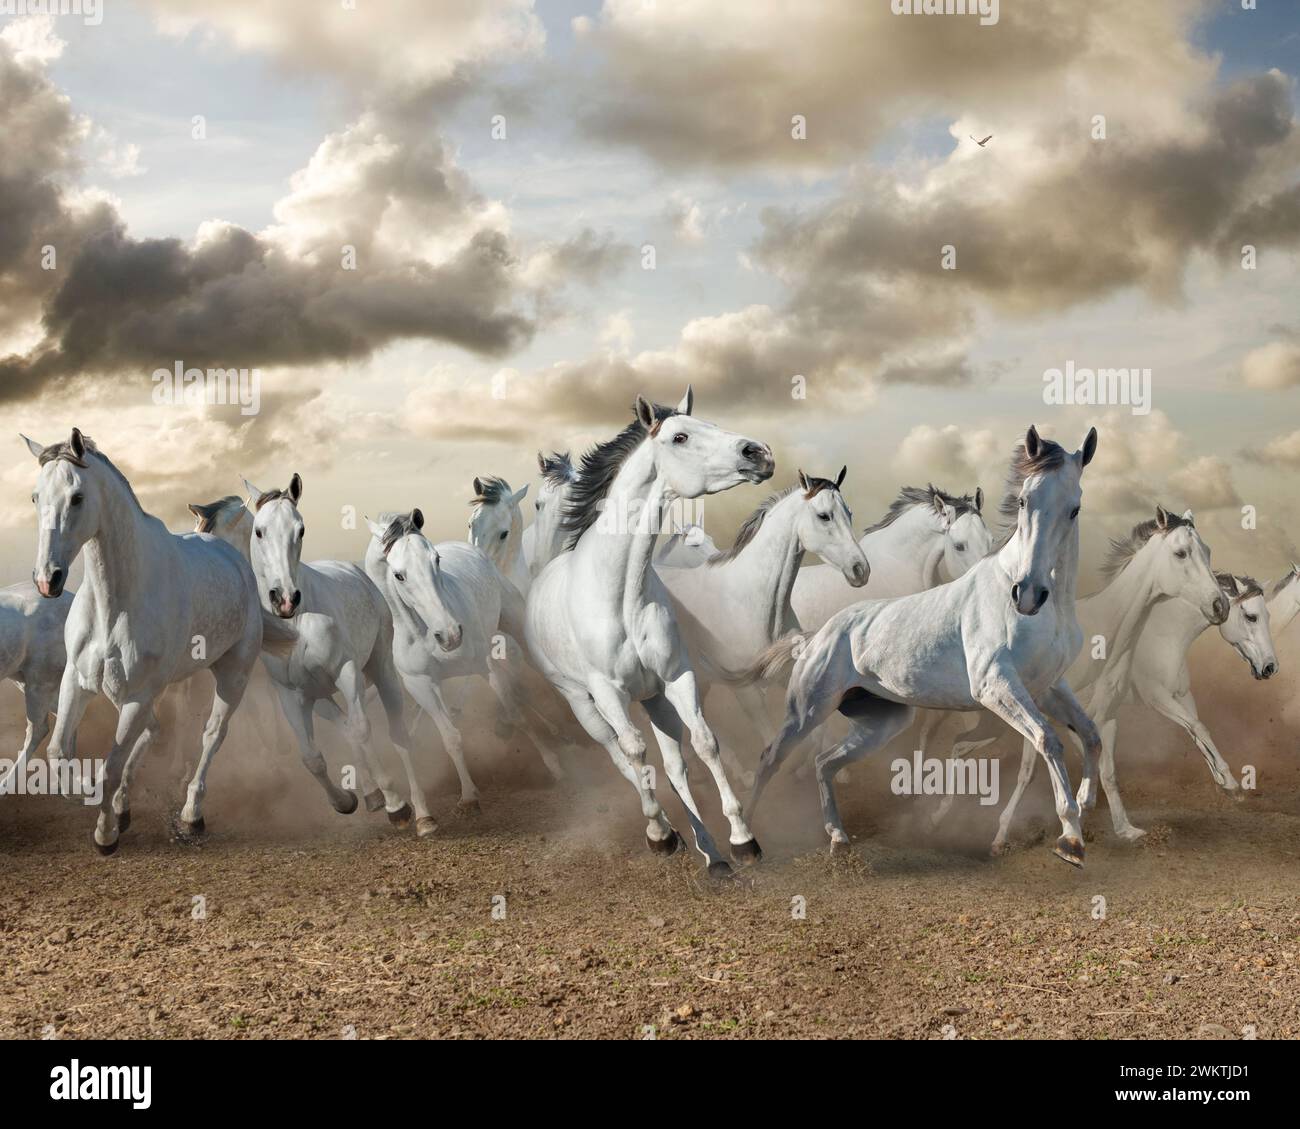 Un troupeau de chevaux blancs se précipite vers le spectateur sous un ciel de nuages dramatiques. Banque D'Images